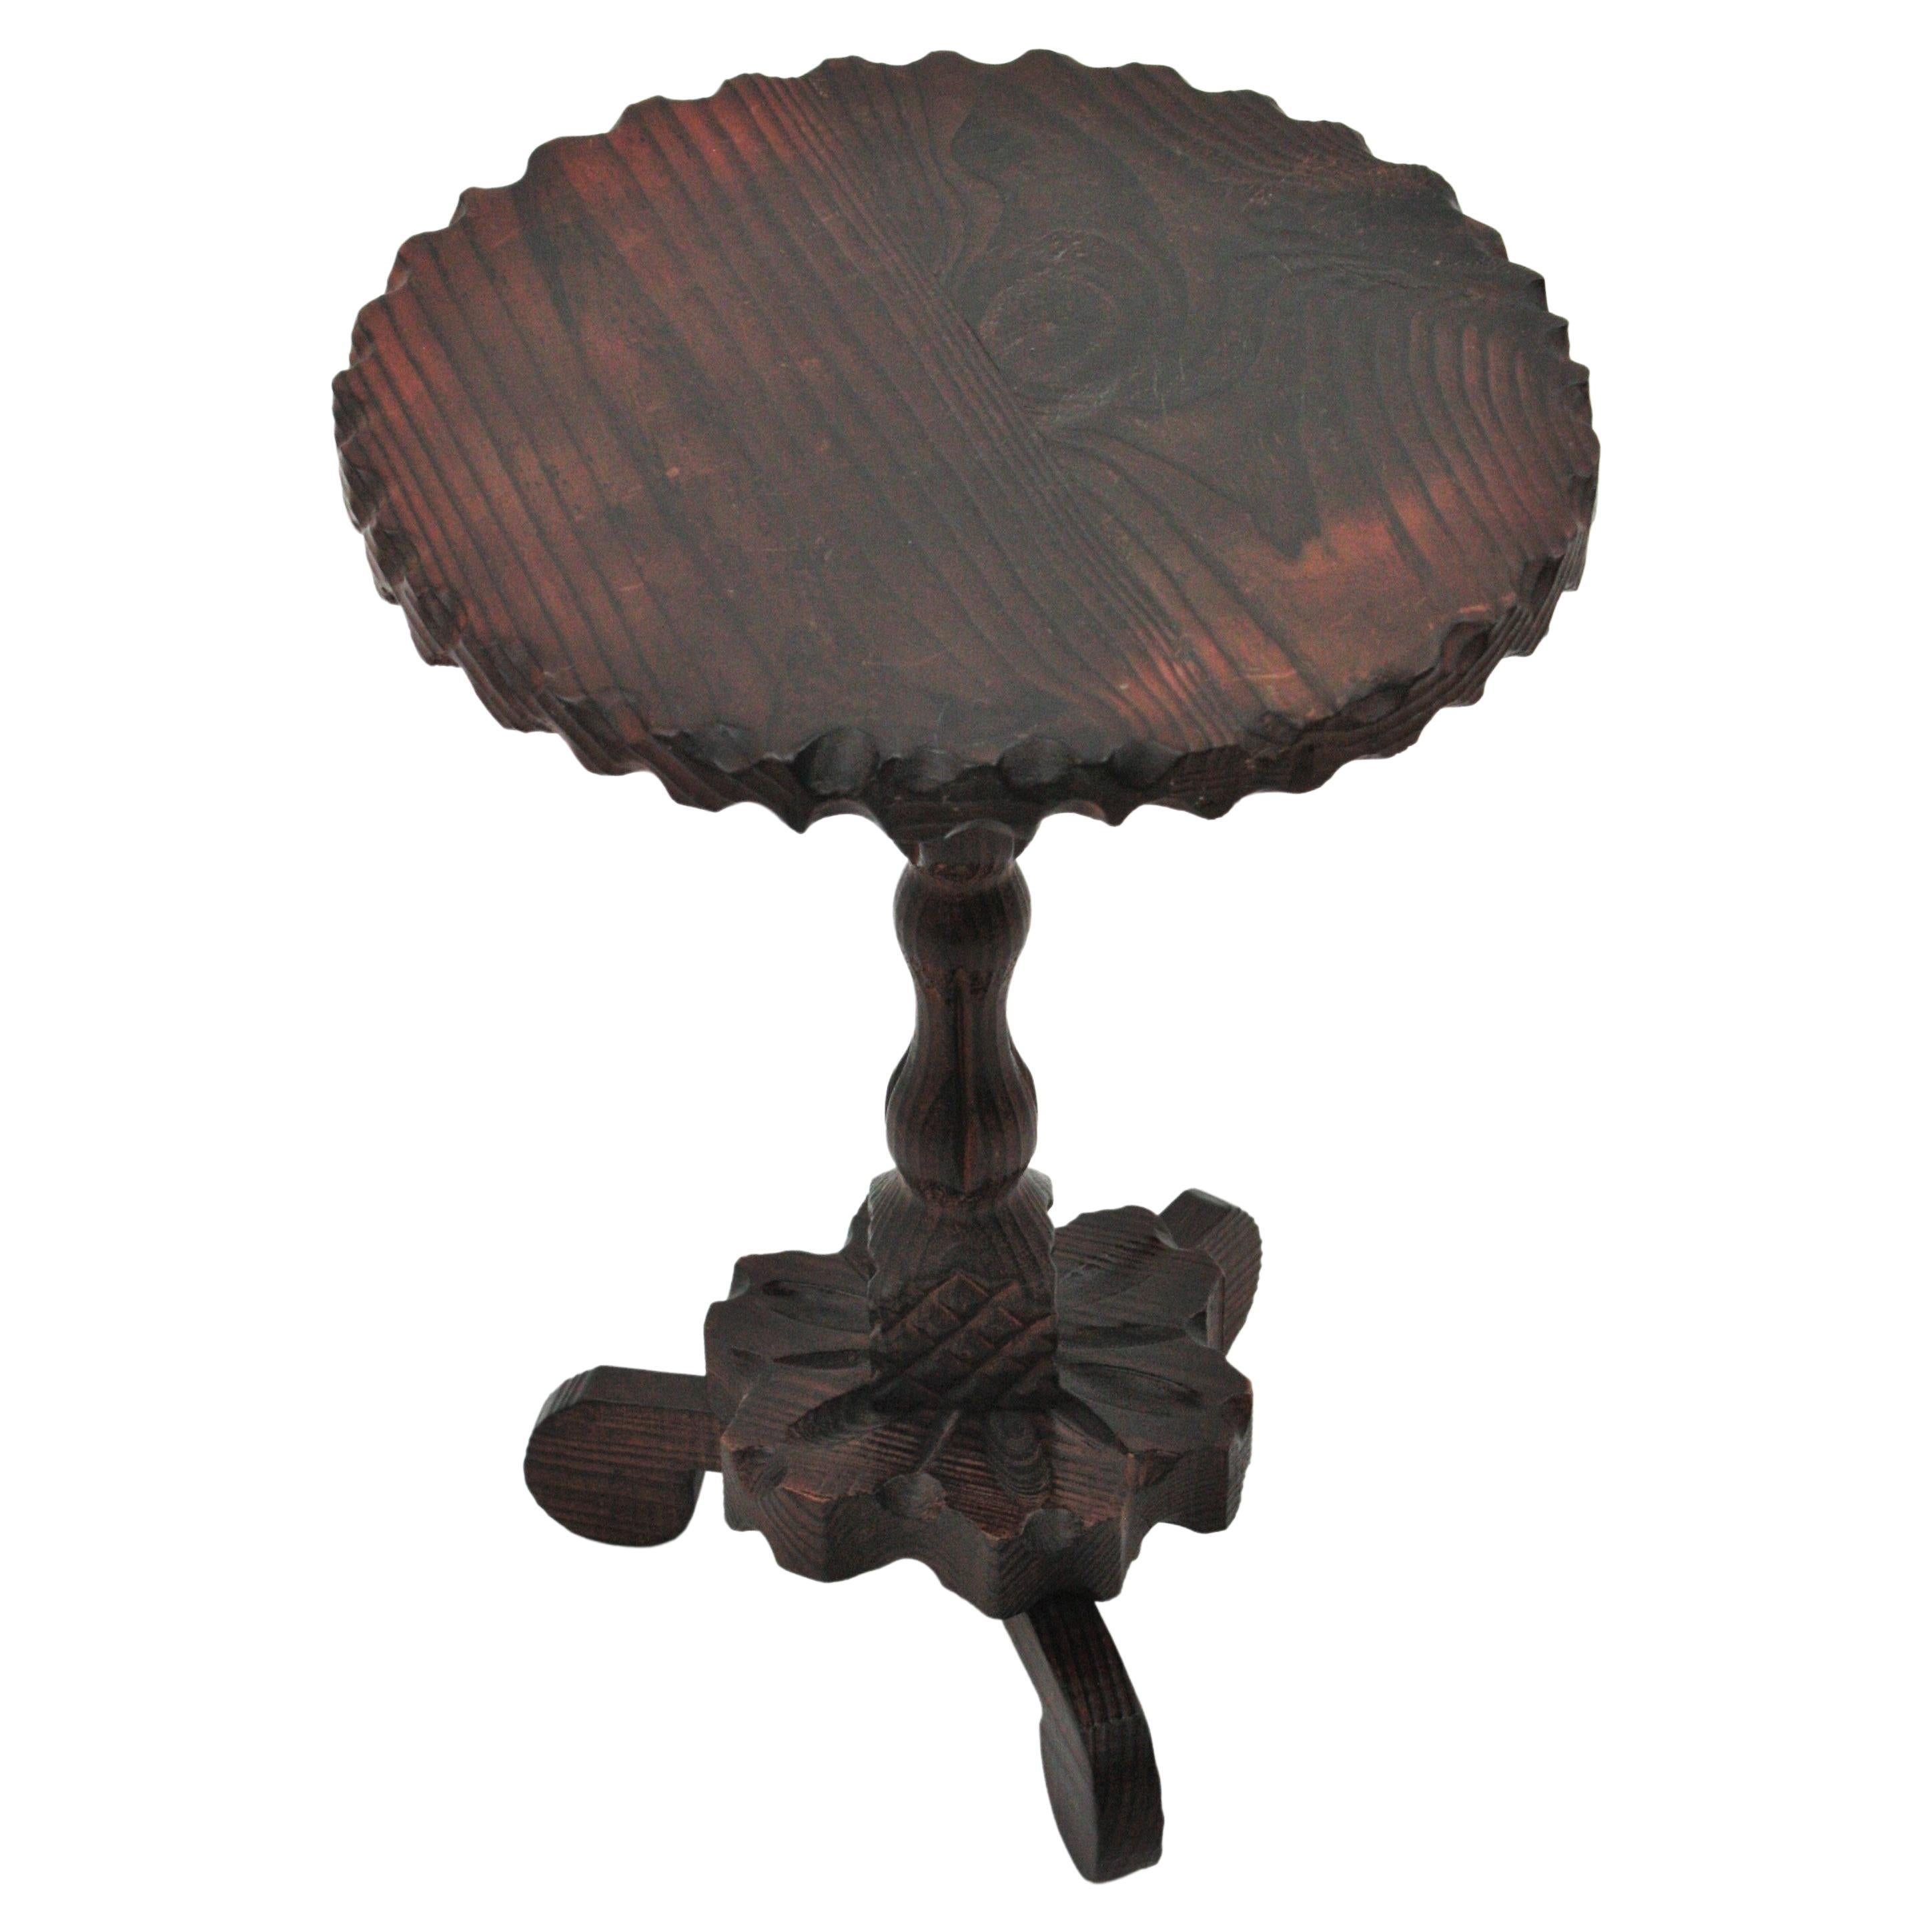 Table de guéridon ou table d'appoint en bois de pin sculpté à la main, reposant sur un trépied. Espagne, années 1940.
Le plateau de table de forme ronde présente des détails festonnés sur le bord. Il repose sur une tige en bois tourné et sur une